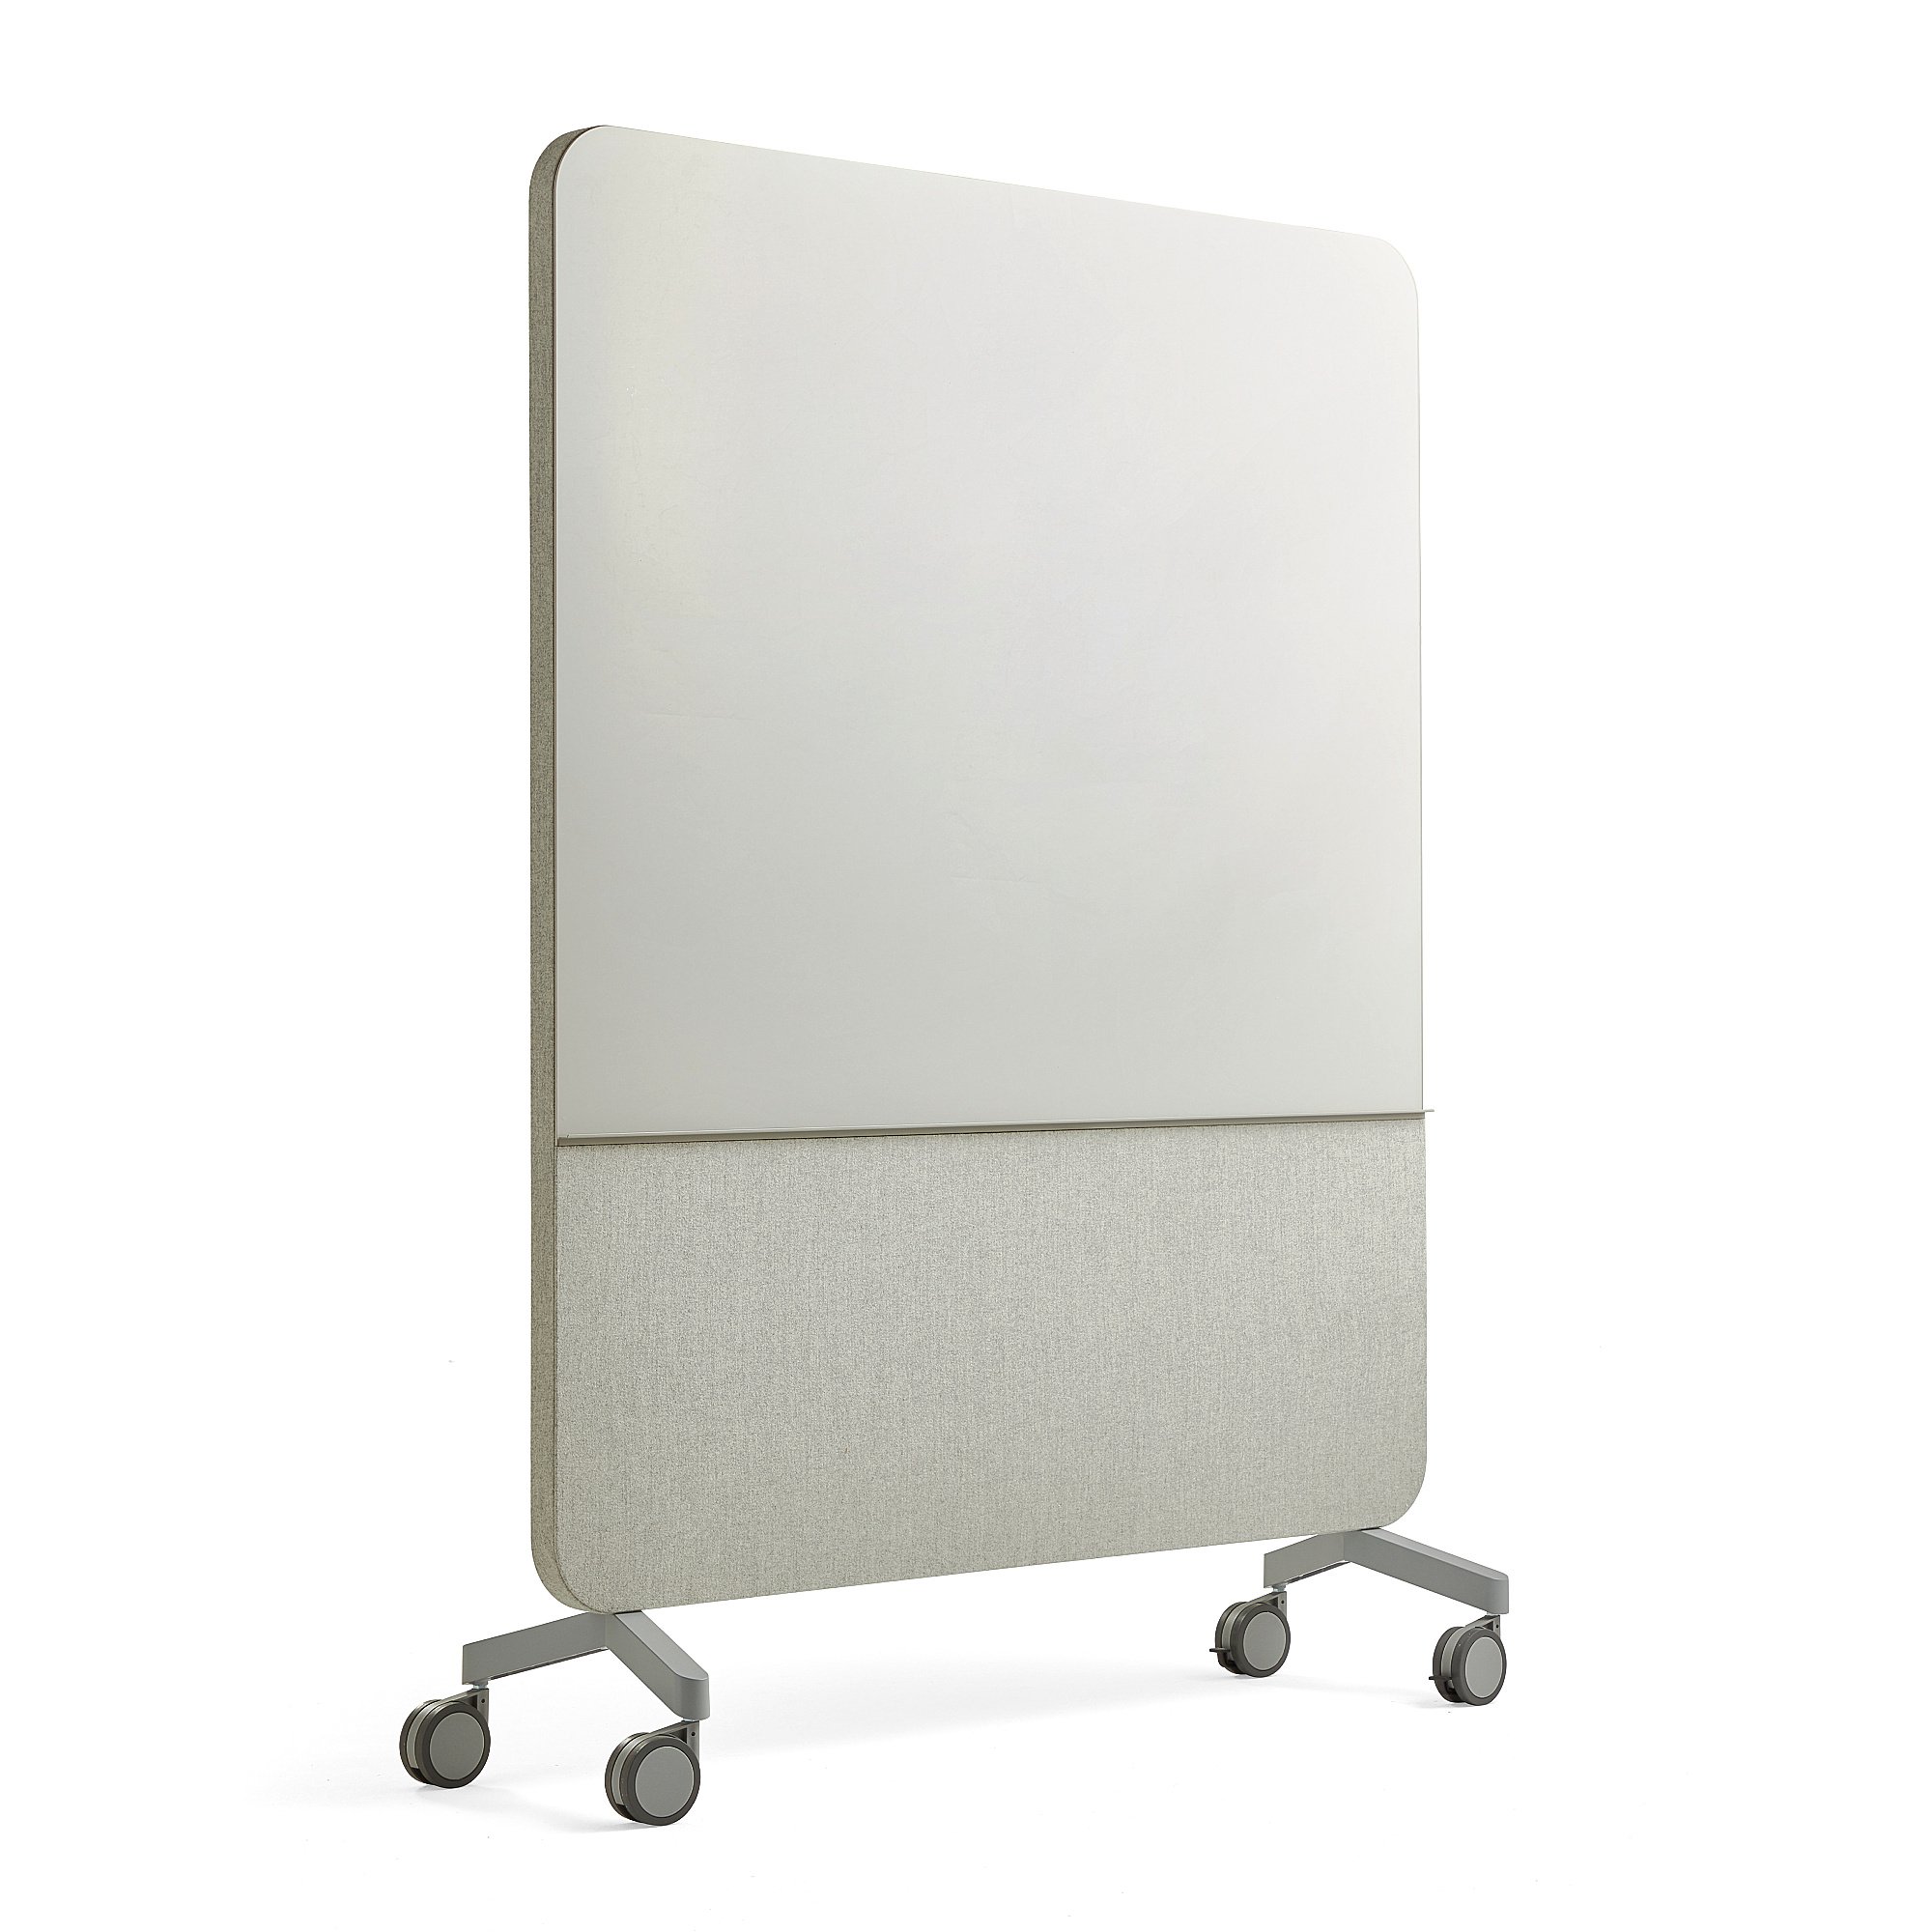 Skleněná tabule s akustickým panelem MARY, mobilní, 1500x1960 mm, světle šedá